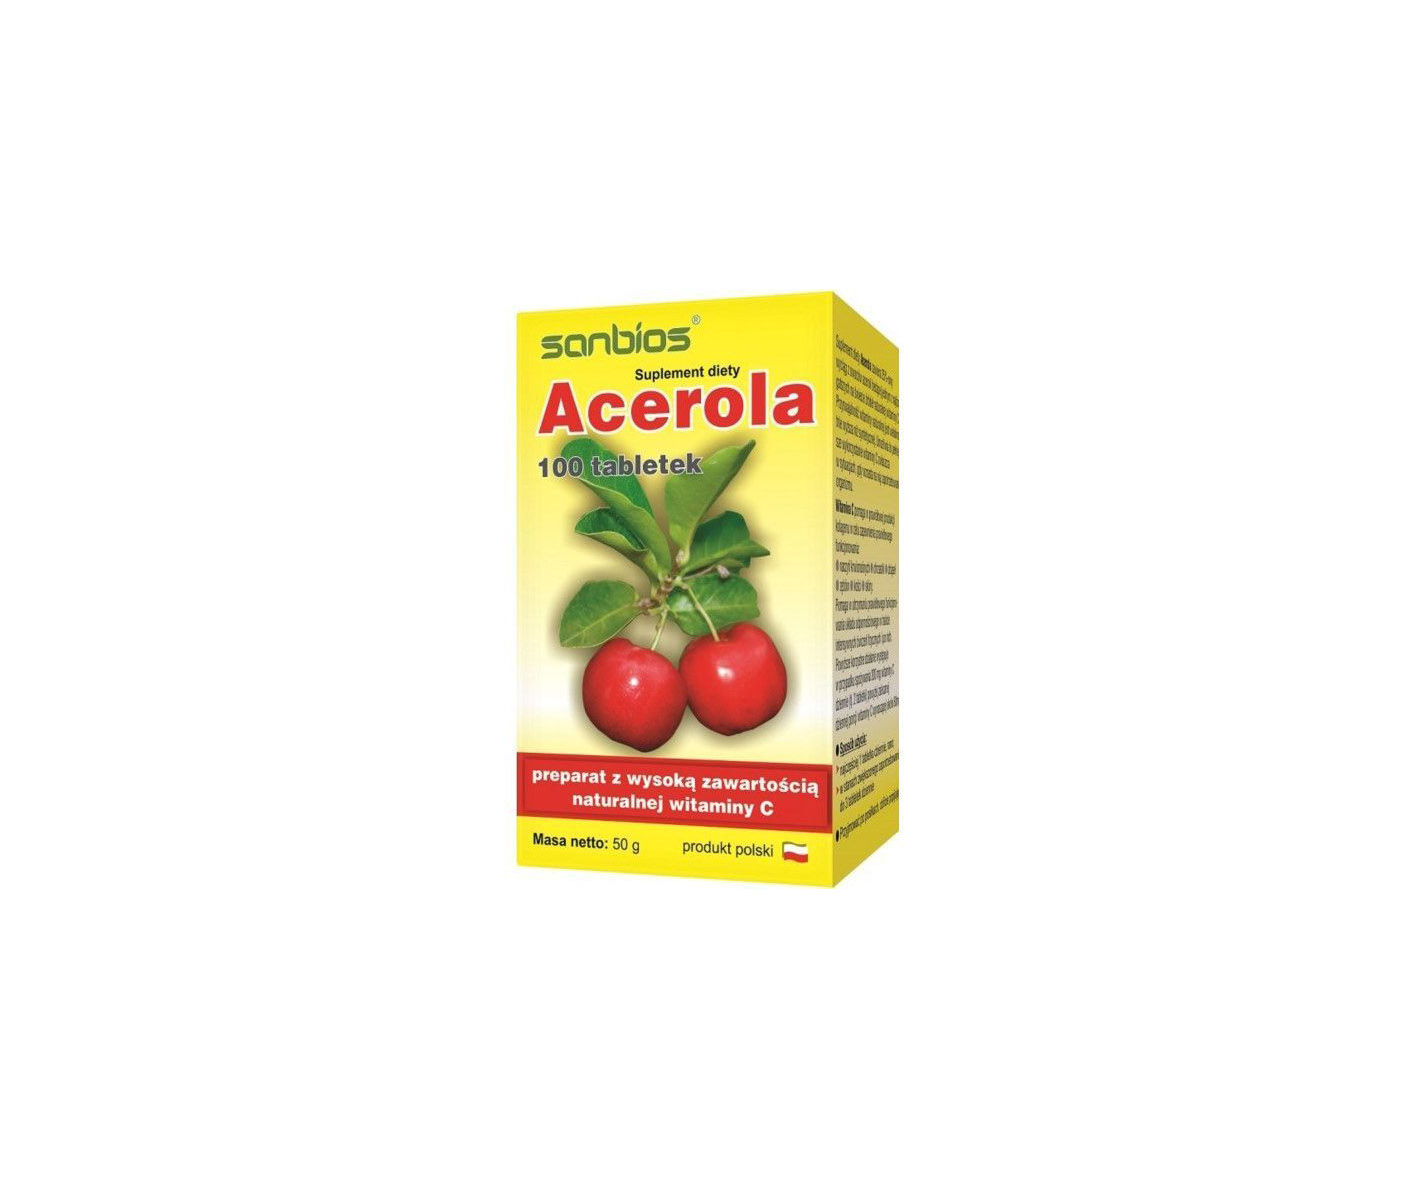 Sanbios, Acerola, suplement diety